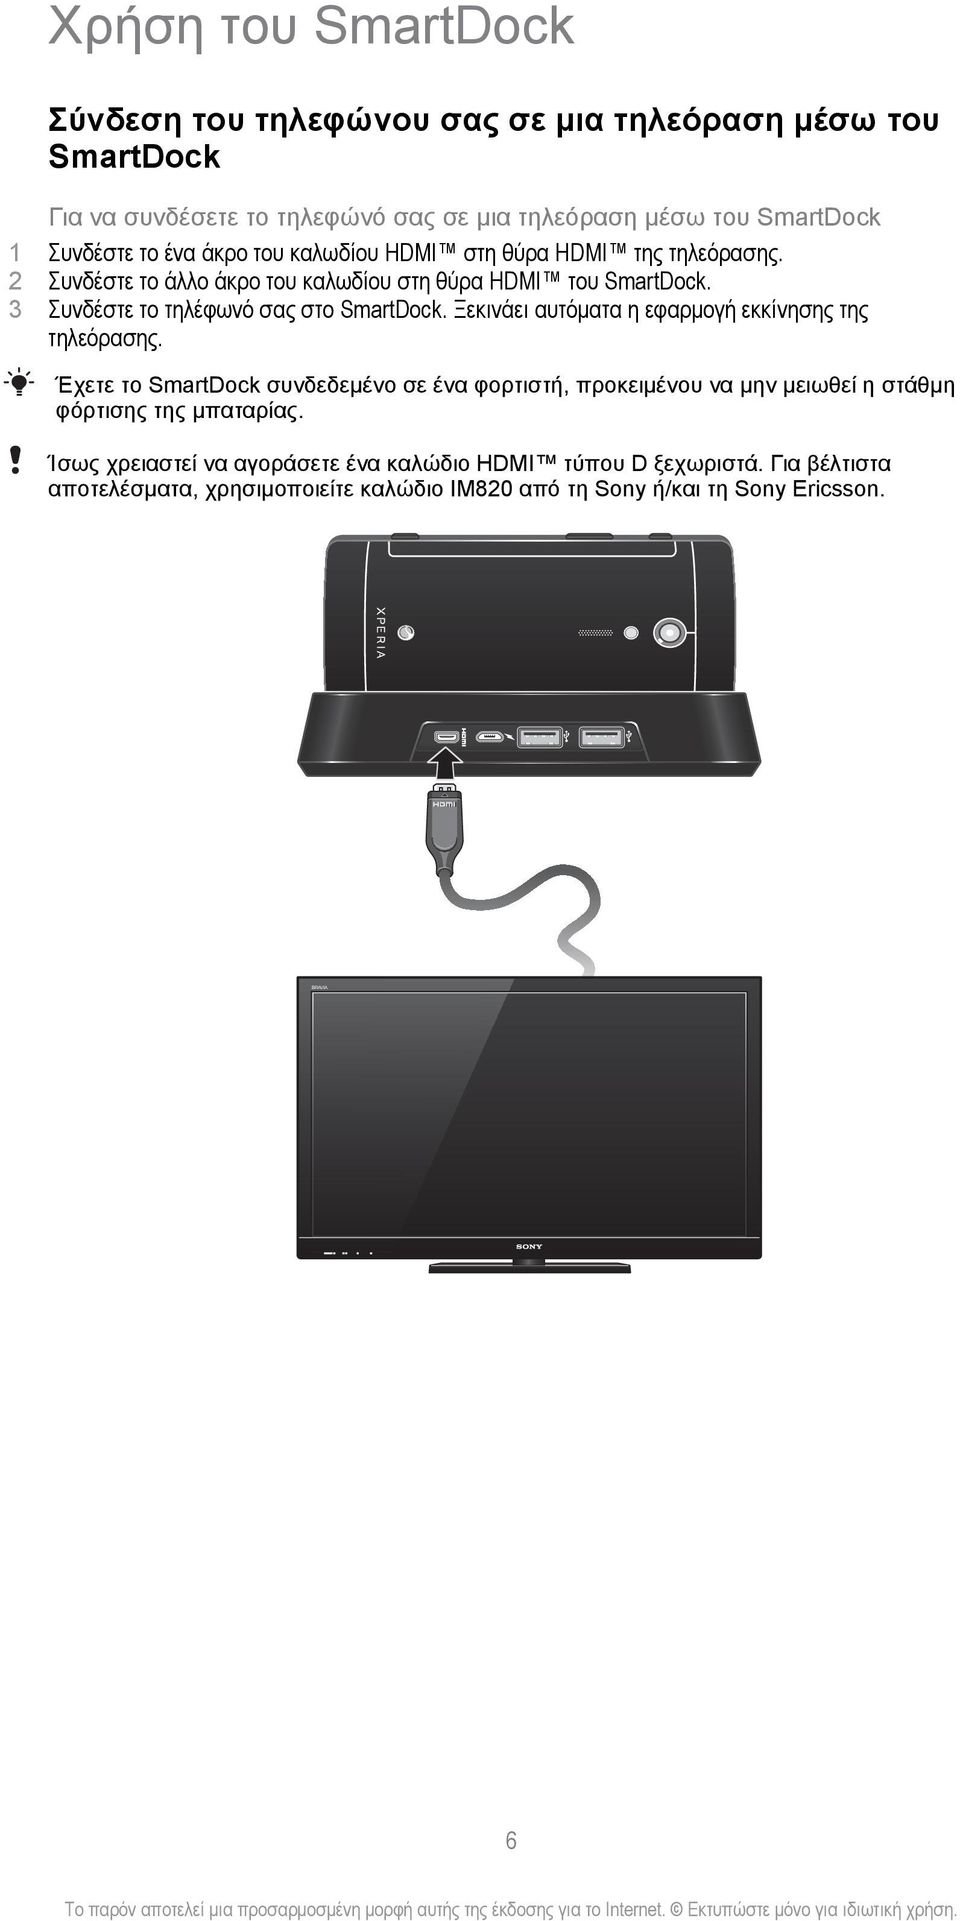 Ξεκινάει αυτόματα η εφαρμογή εκκίνησης της τηλεόρασης. Έχετε το SmartDock συνδεδεμένο σε ένα φορτιστή, προκειμένου να μην μειωθεί η στάθμη φόρτισης της μπαταρίας.